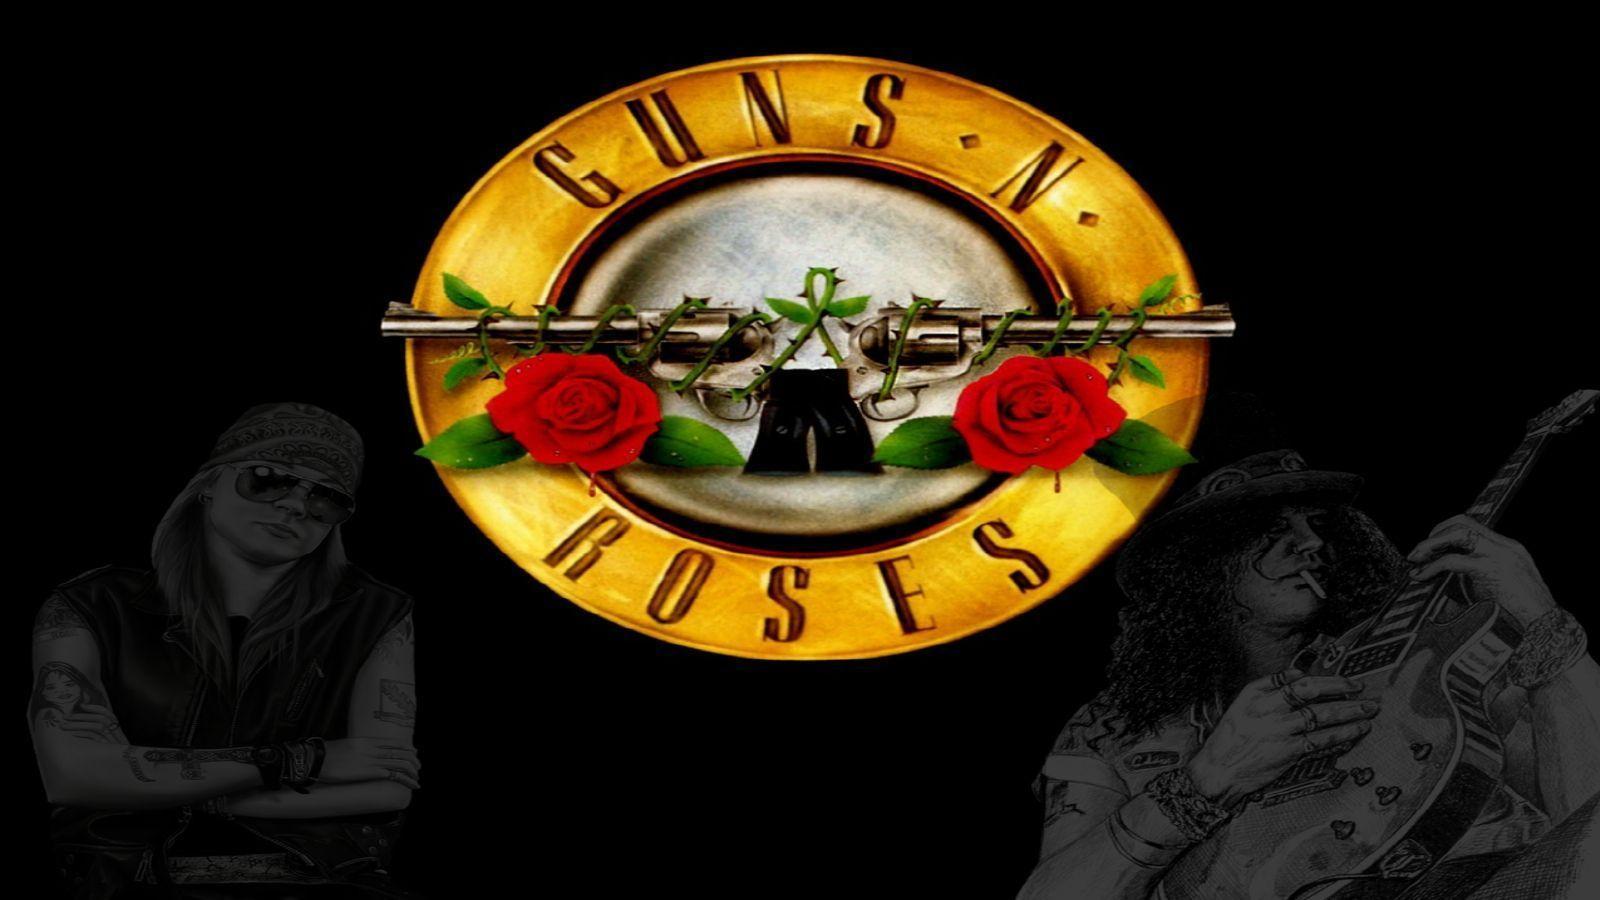 Guns N Roses Wallpaper 10